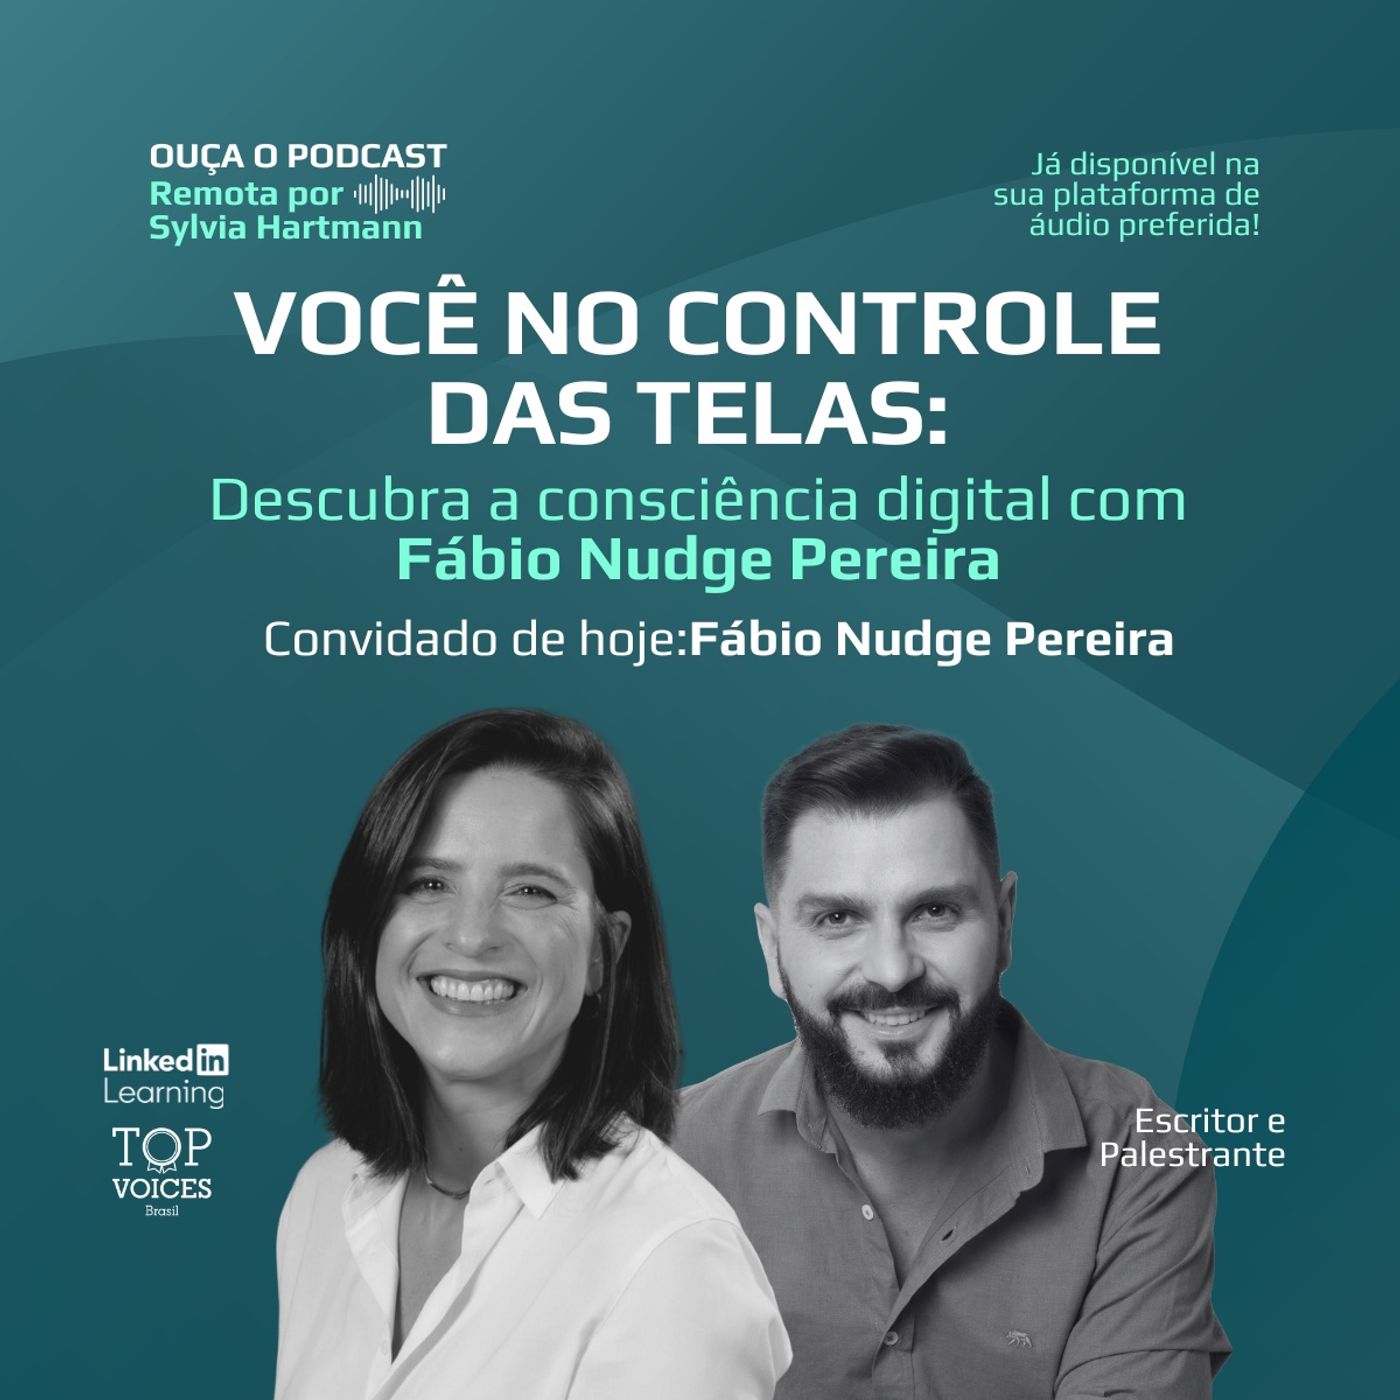 #012 Você no controle das telas: Descubra a consciência digital | Fábio Nudge Pereira (Polo Palestrantes)